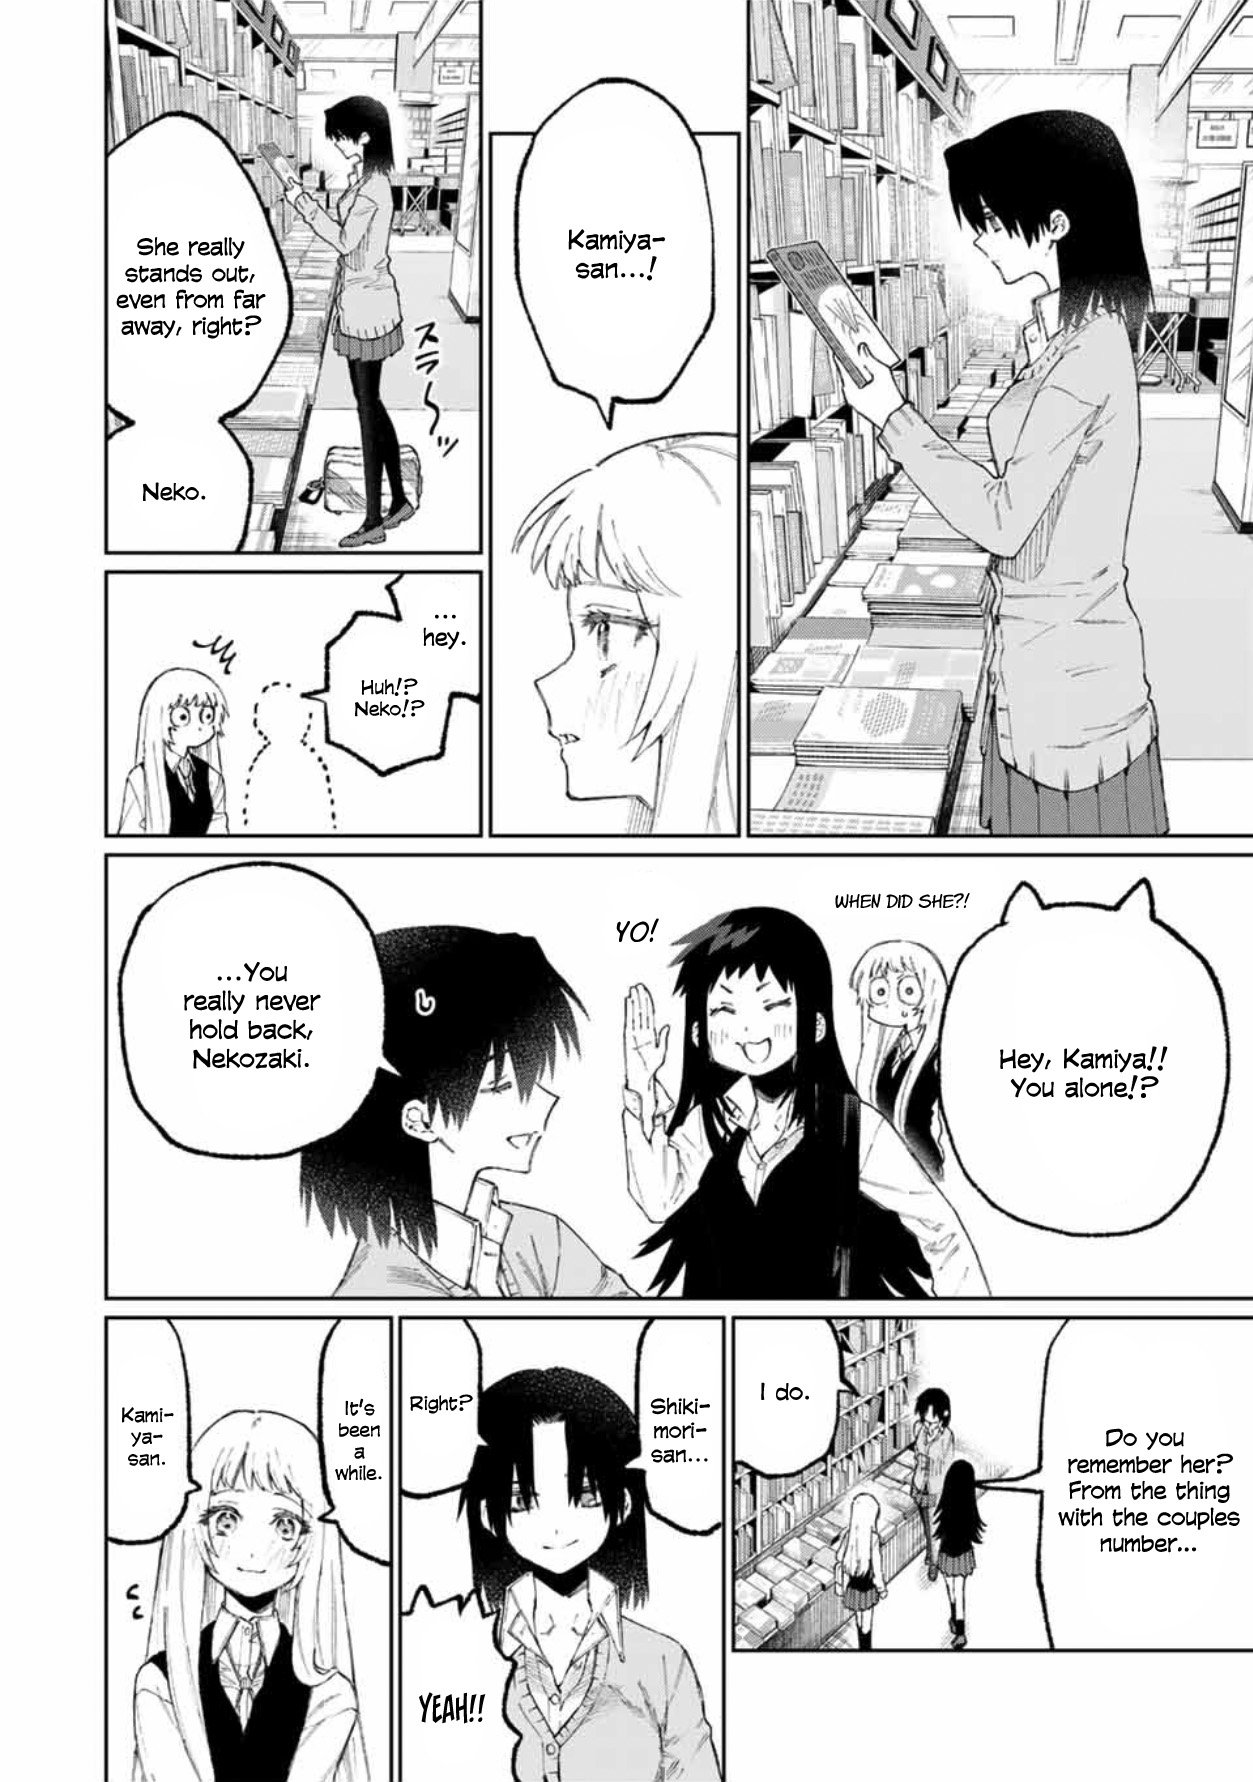 Shikimori's Not Just A Cutie - chapter 47 - #3